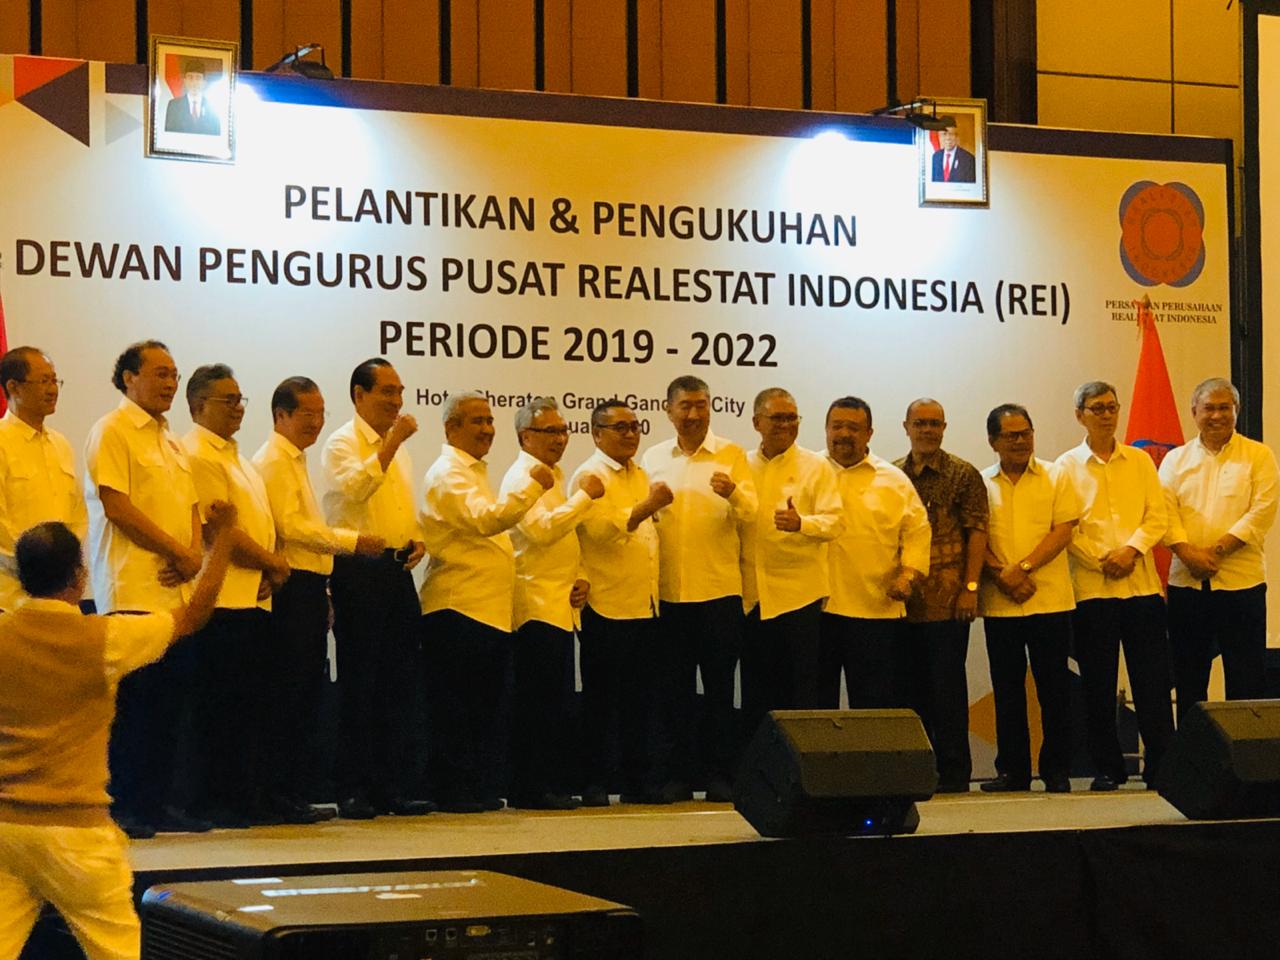 Pengukuhan susunan dan Personalia DPP REI yang dilaksanakan pada Senin, 6 Januari 2020 di Jakarta. (Foto: Istimewa)